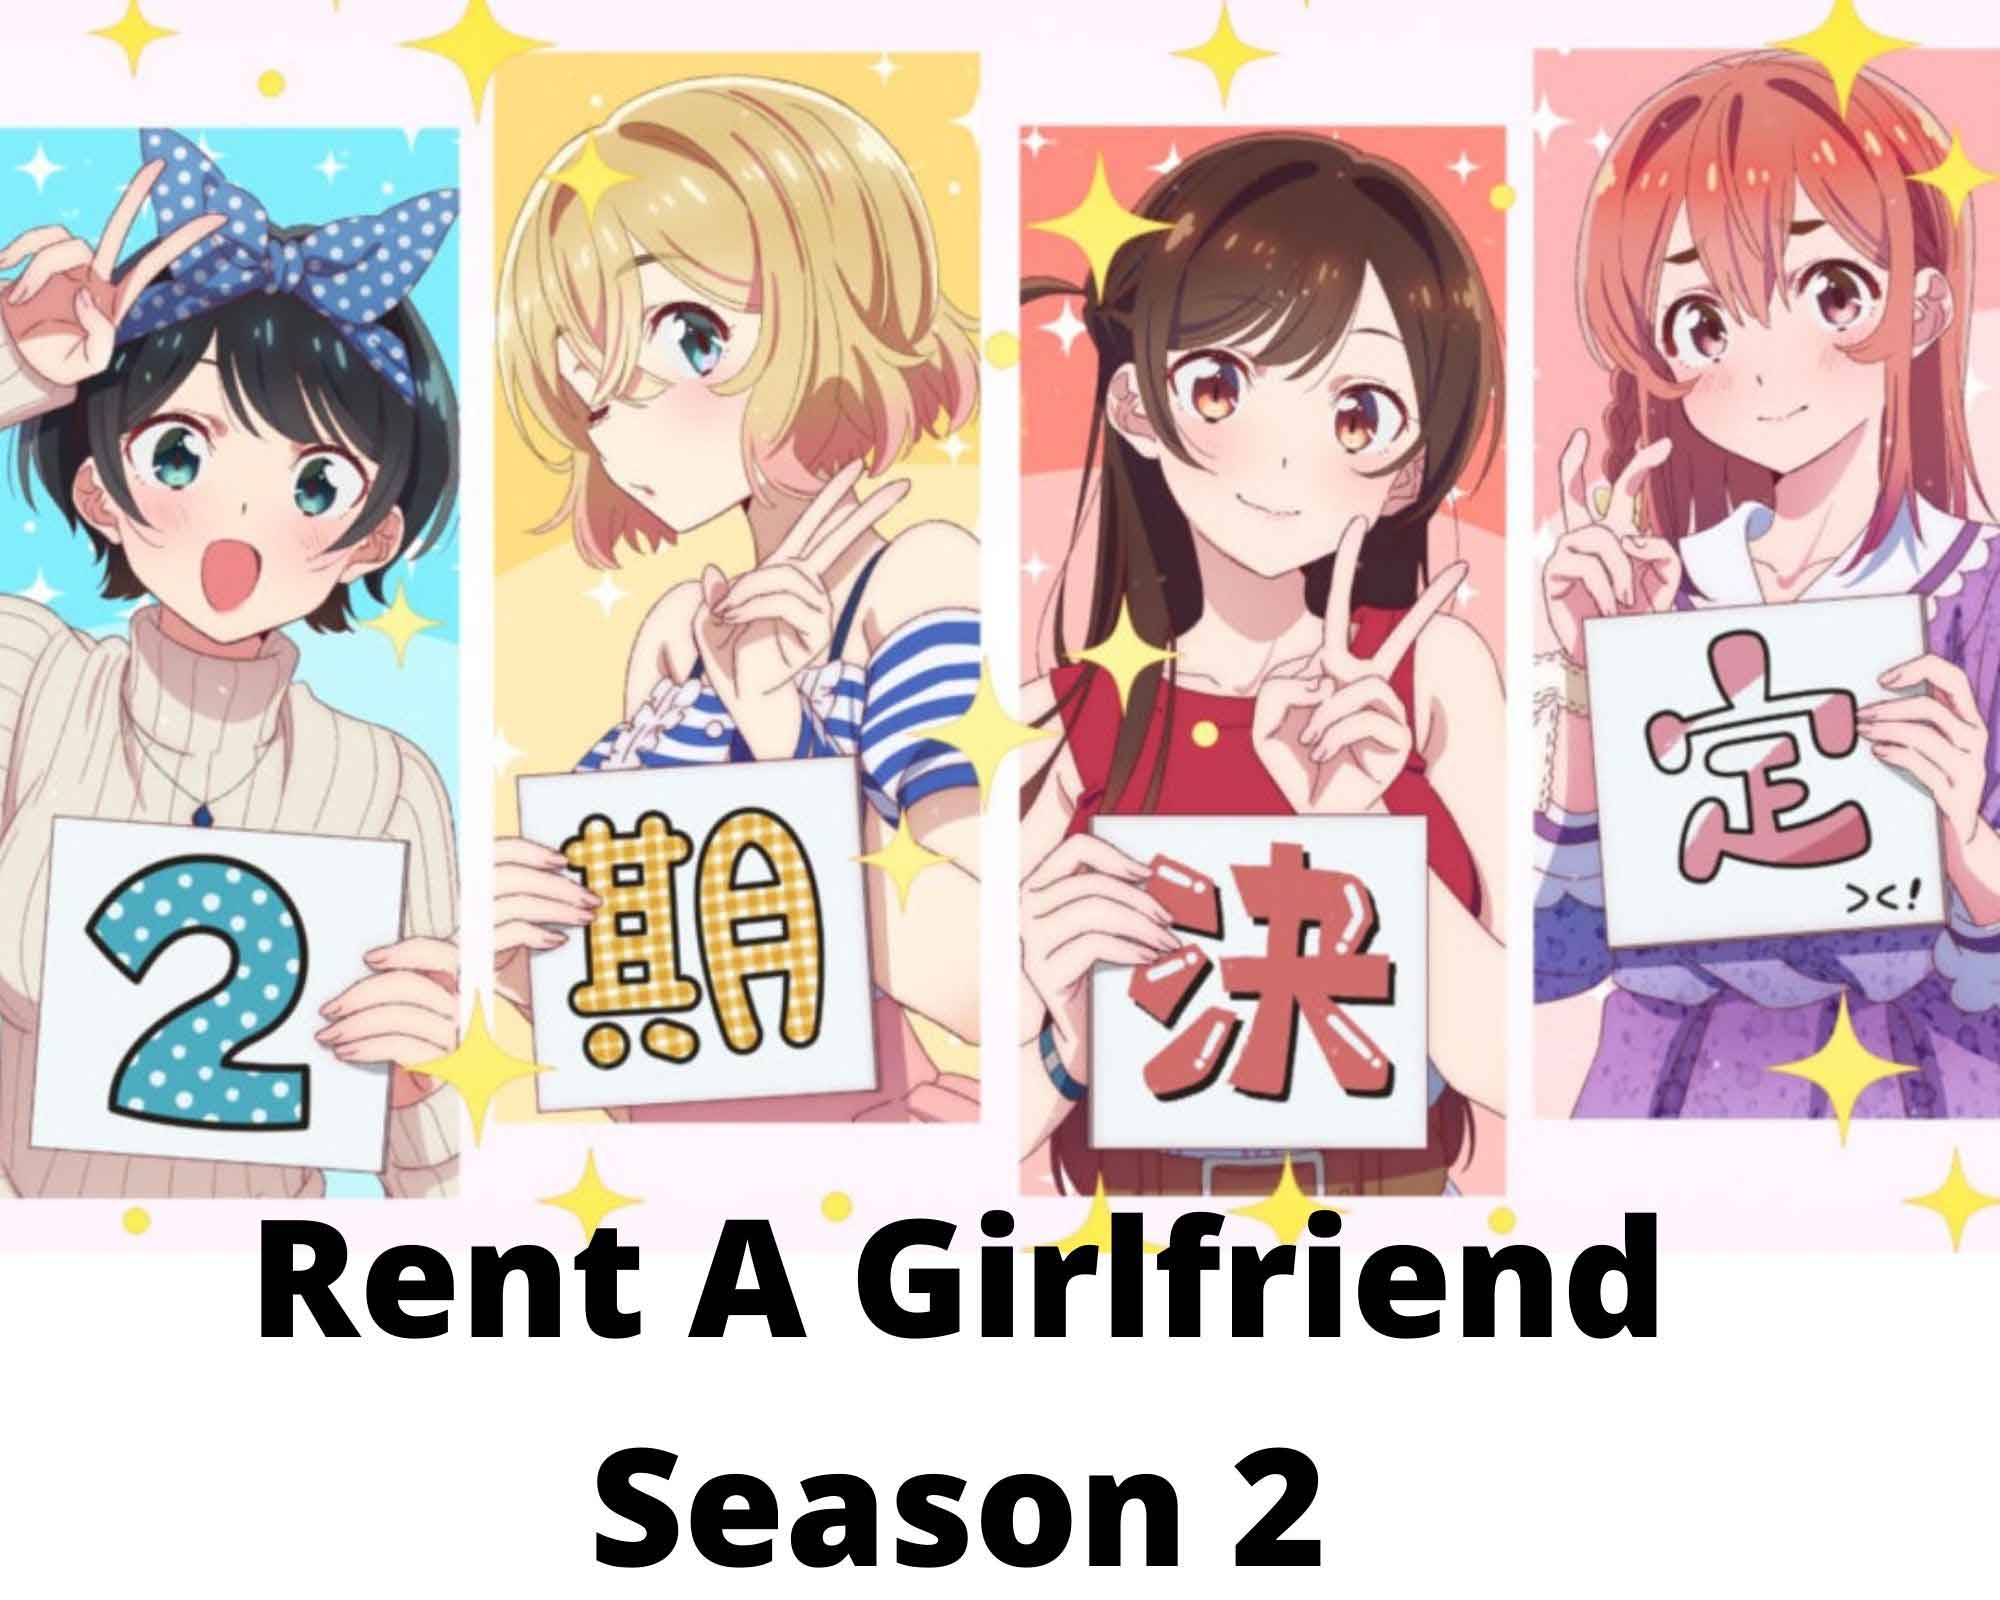 Rent A Girlfriend Season 2